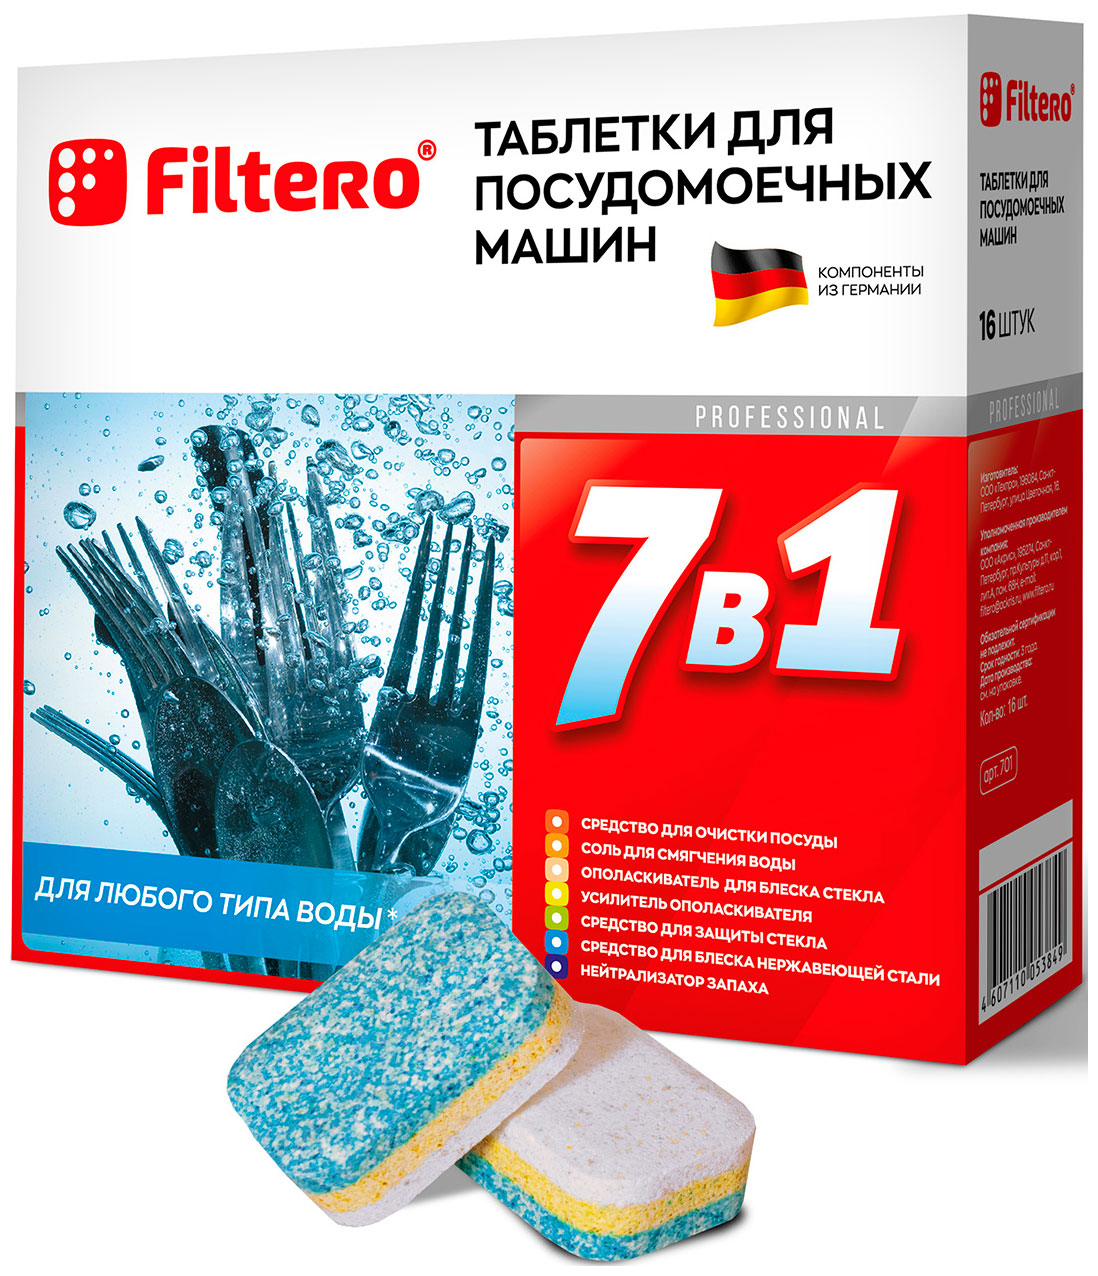 Таблетки для посудомоечных машин Filtero Filtero 7 в 1 таблетки для посудомоечной машины таблетки для посудомоечных машин filtero 7 в 1 90 шт арт 703